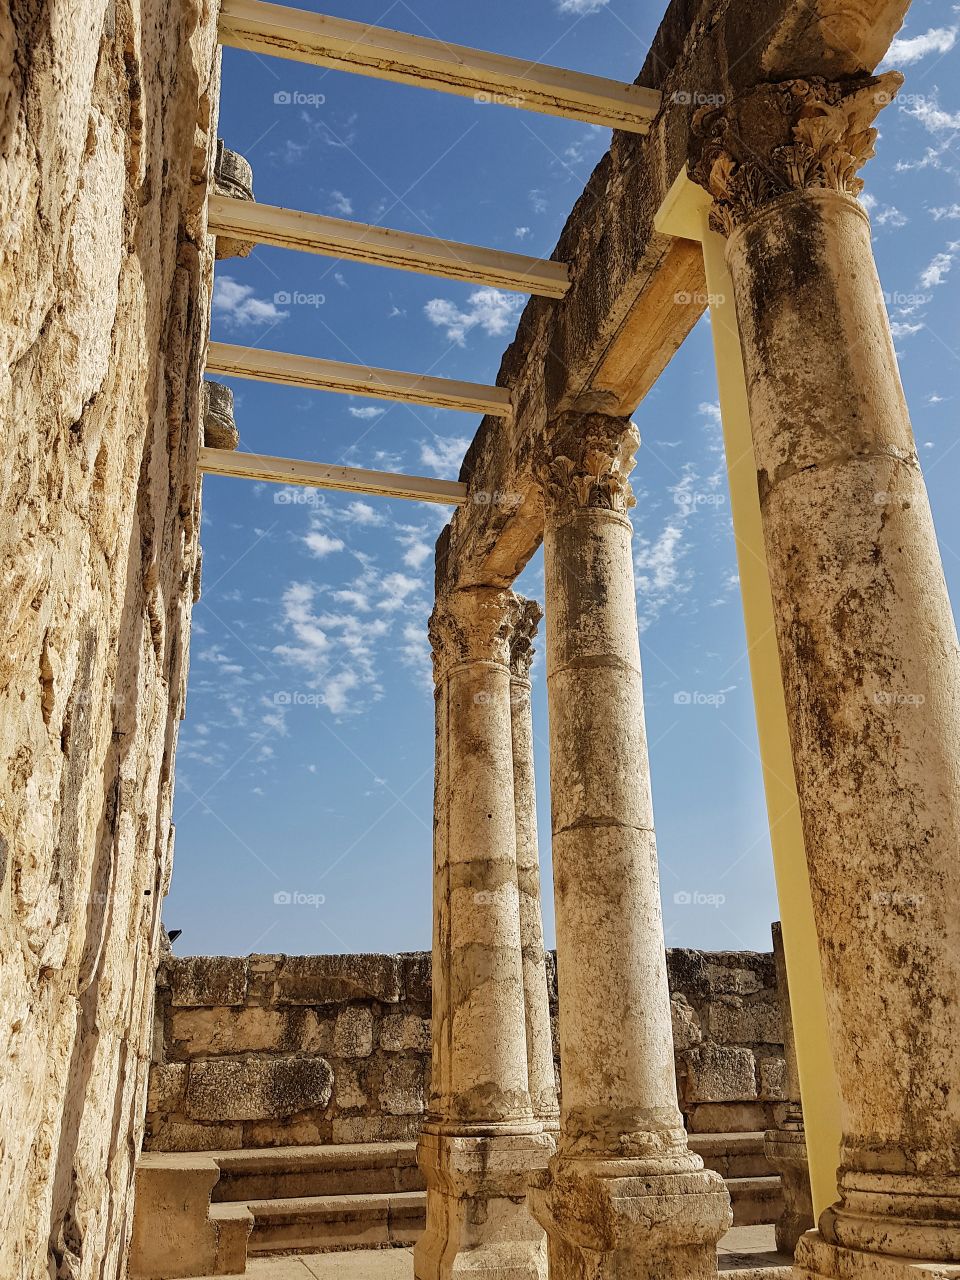 ruins at capernaum, israel